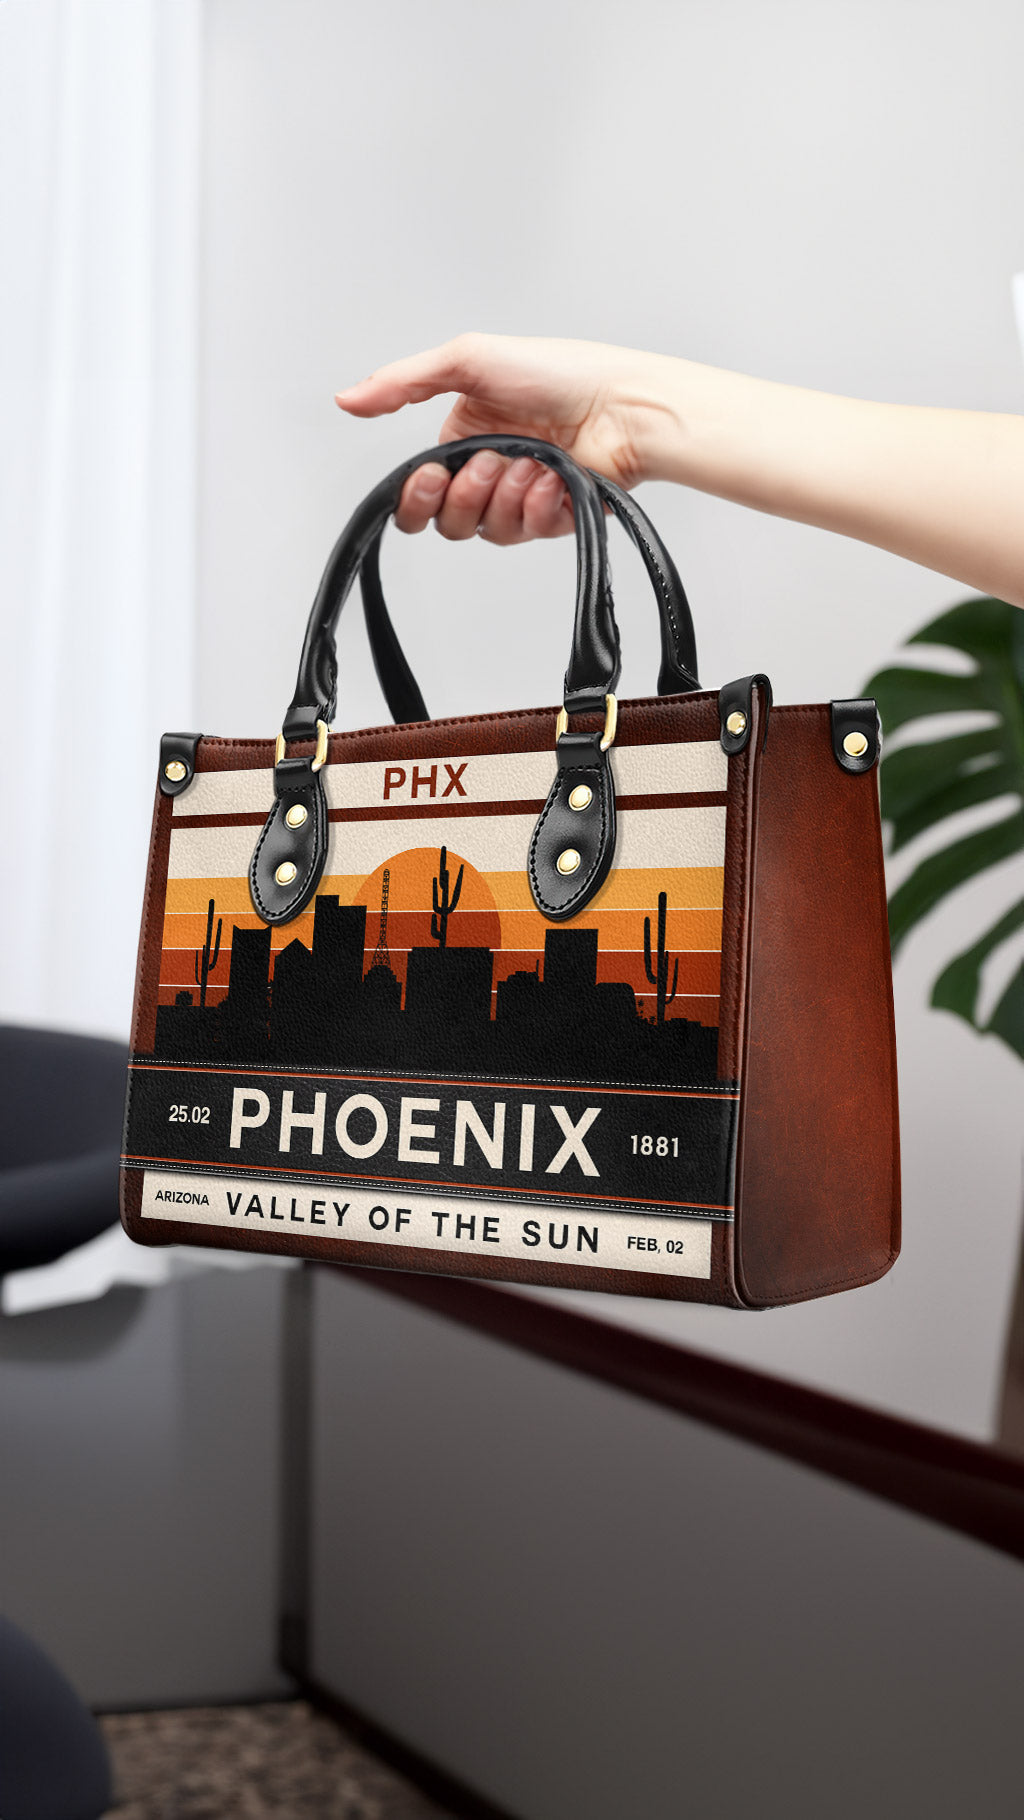 Phoenix - Leather Handbag - PHX01